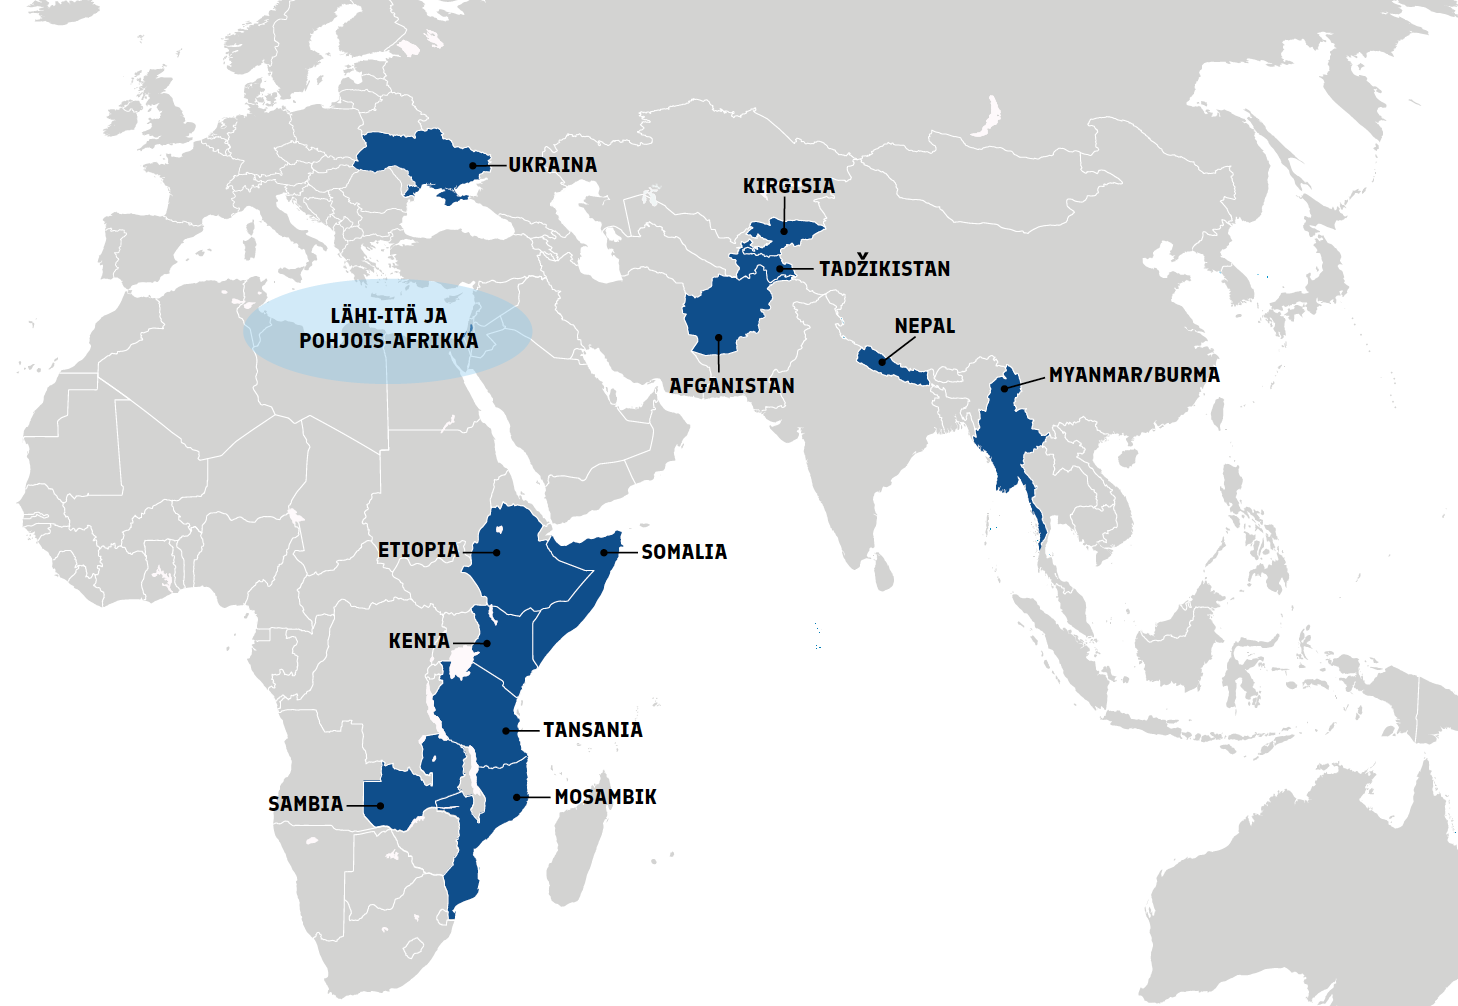 Kartta, johon on merkitty Suomen kumppanimaat: Ukraina, Etiopia, Somalia, Kenia, Tansania, Mosambik, Sambia, Afganistan, Kirgisia, Tadzhikistan, Nepal ja Myanmar.